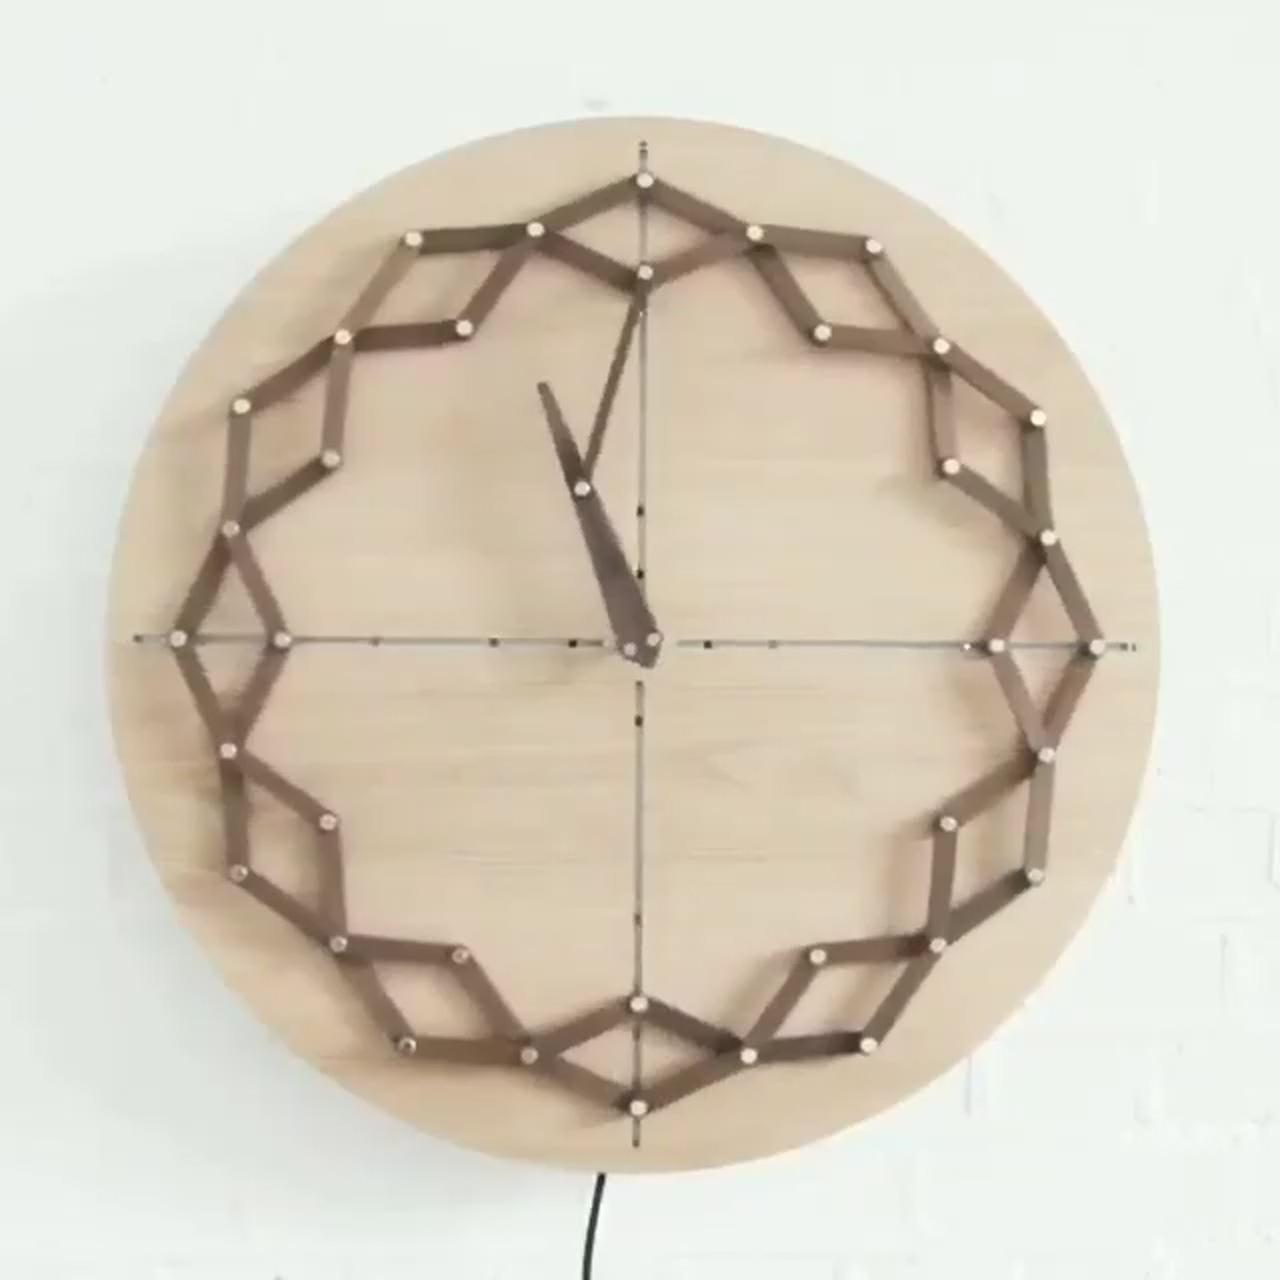 Interactive clock design; unique spirograph design #spirograph #cyclex #diyart #masterpiece